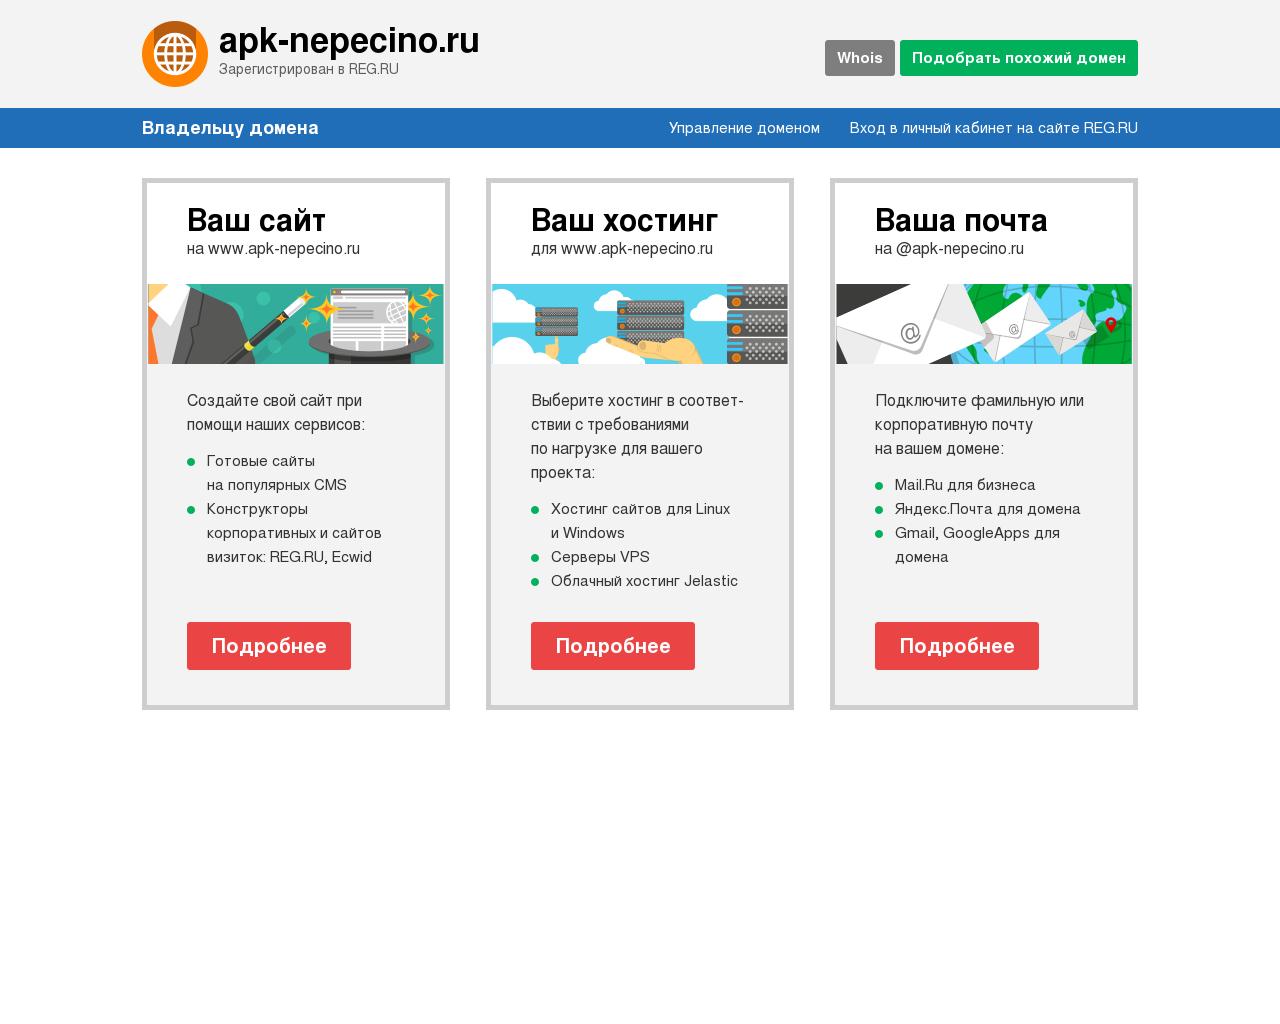 Изображение сайта apk-nepecino.ru в разрешении 1280x1024